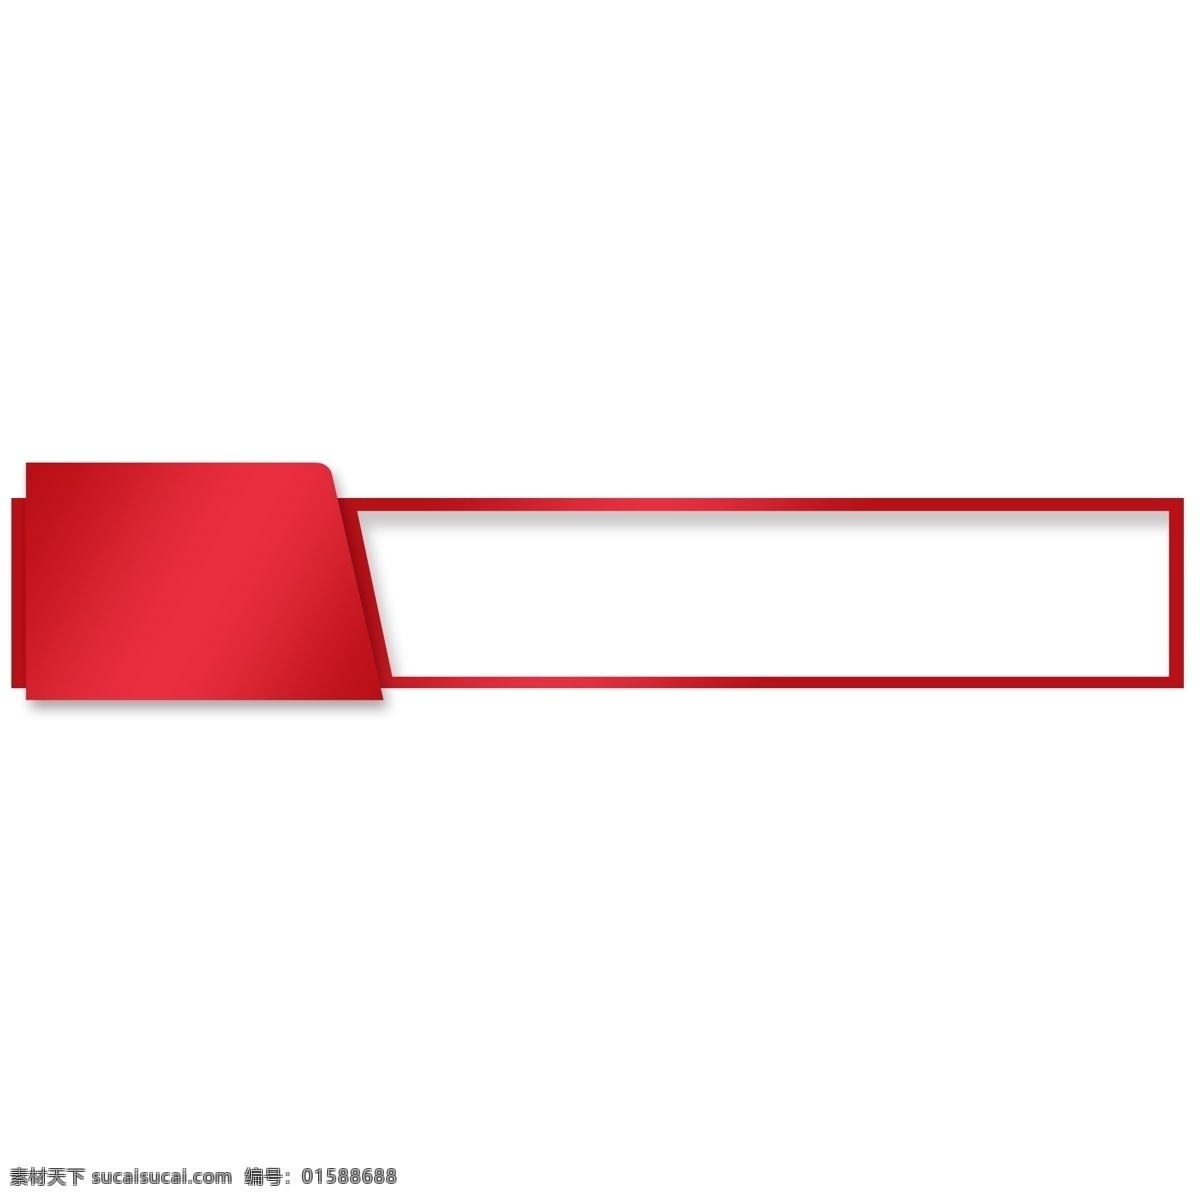 时尚 红色 边框 商务 白色 矩形边框 设计素材